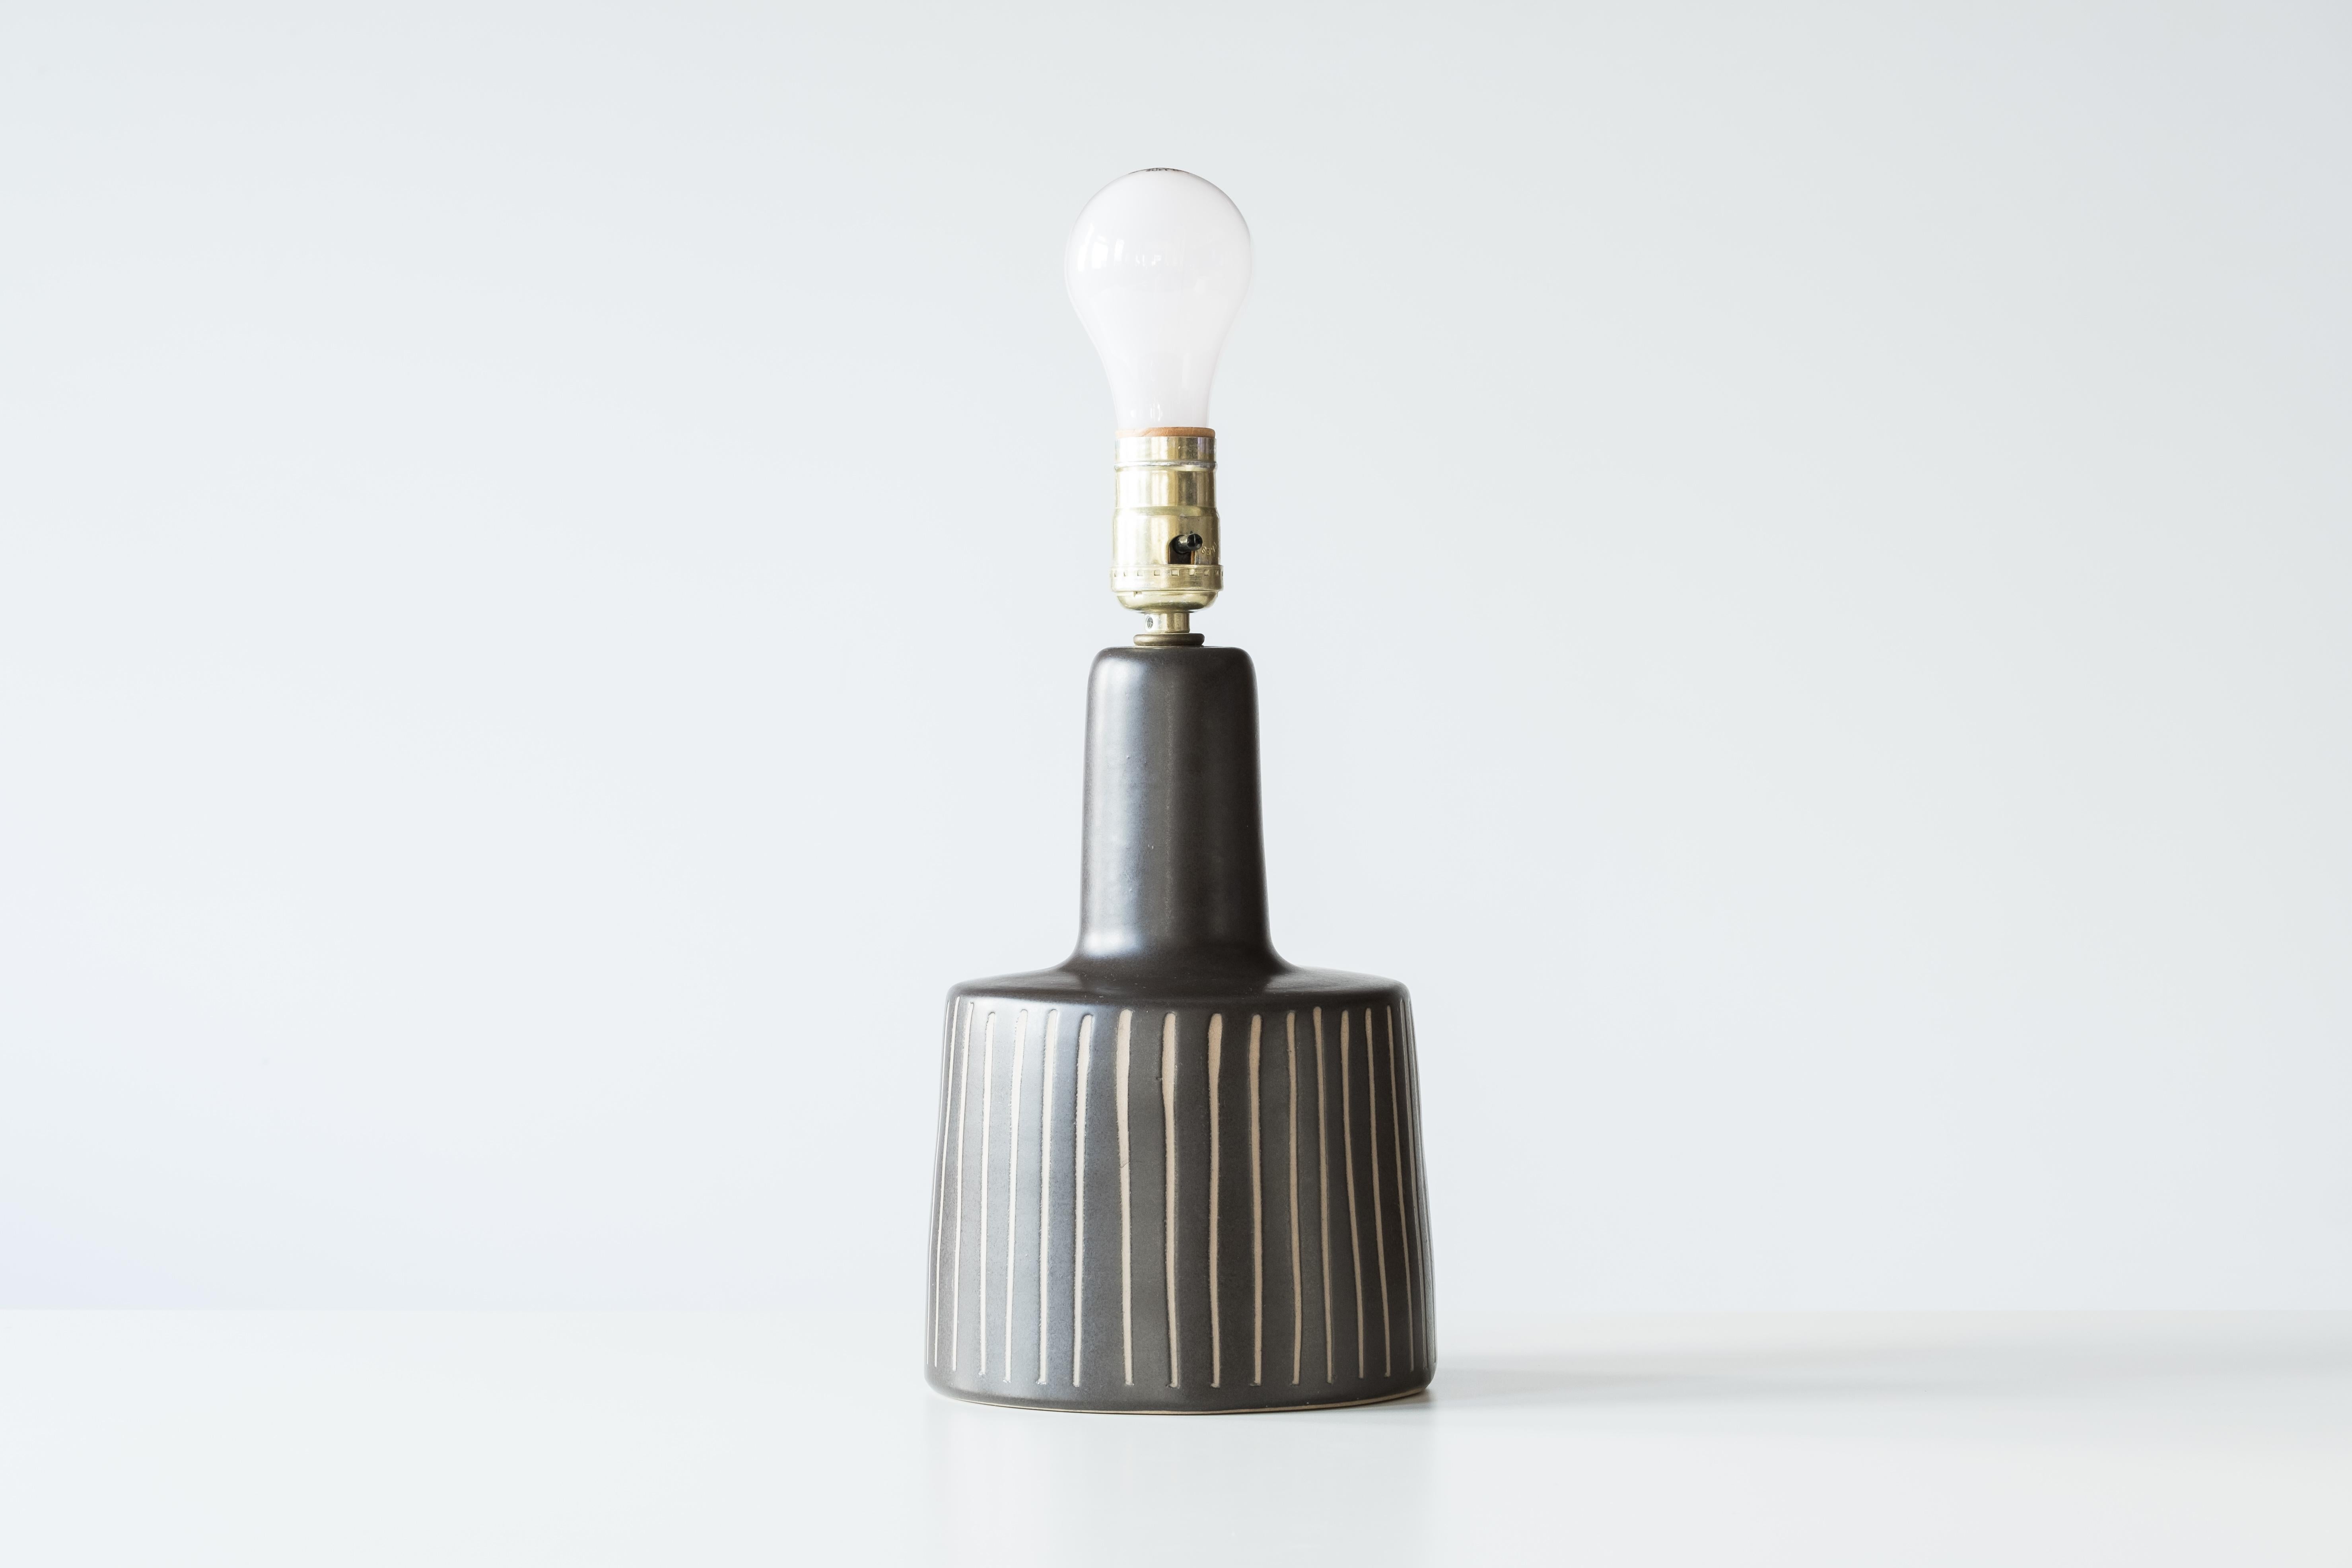 Vernissé Lampe de table en céramique Martz/Marshall Studios, glaçure noire à rayures verticales